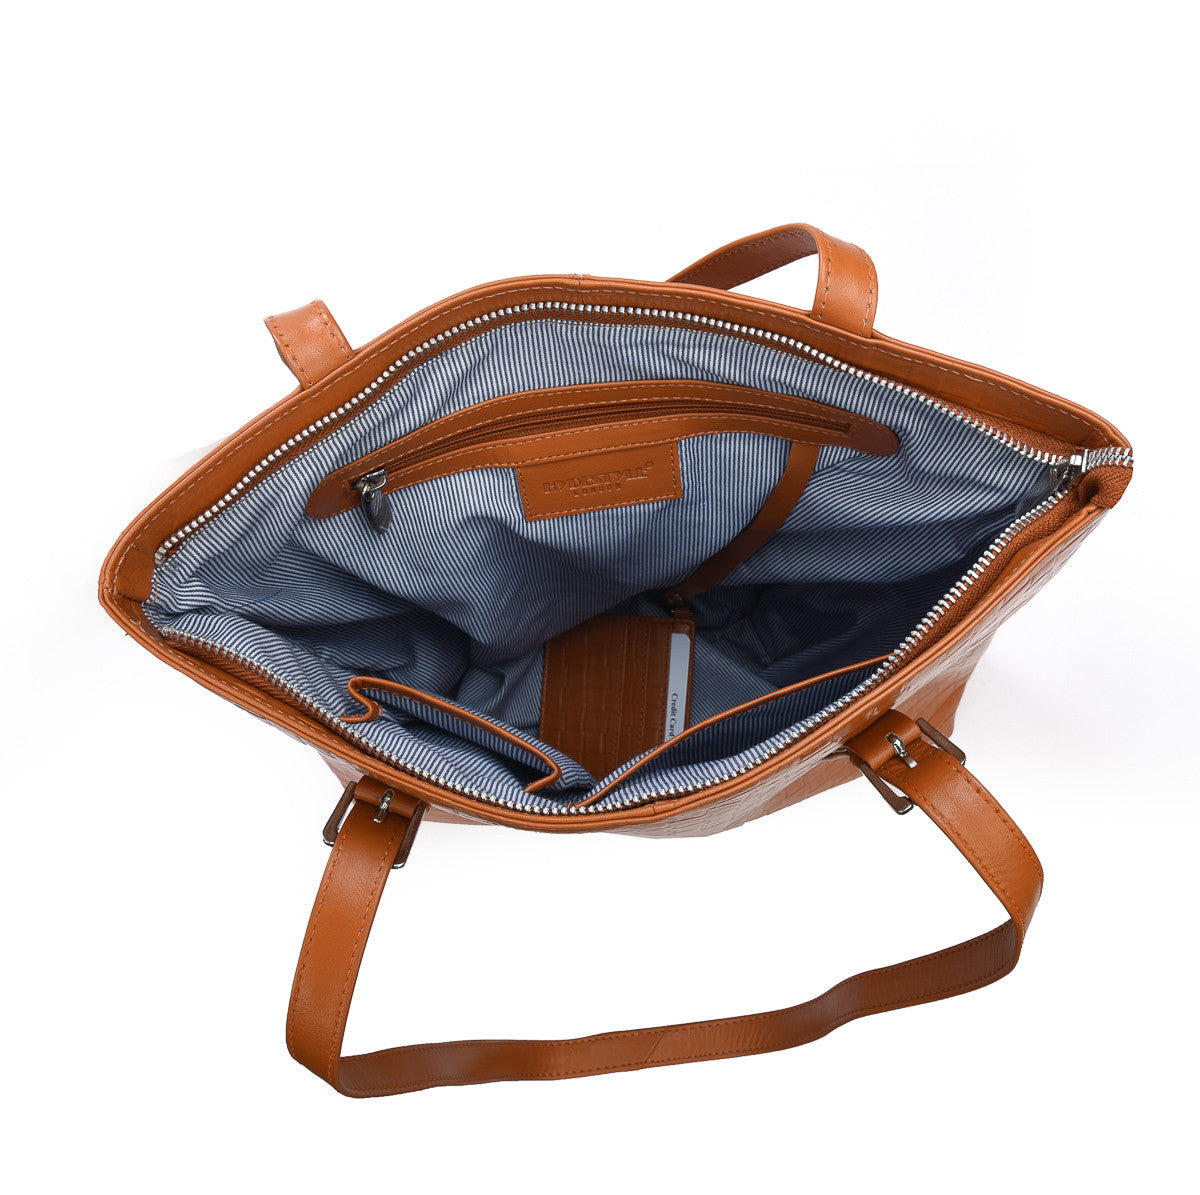 SECURE RFID Embossed Leather Waffel Ladies Zip Top Tote Bag LB68 RUST